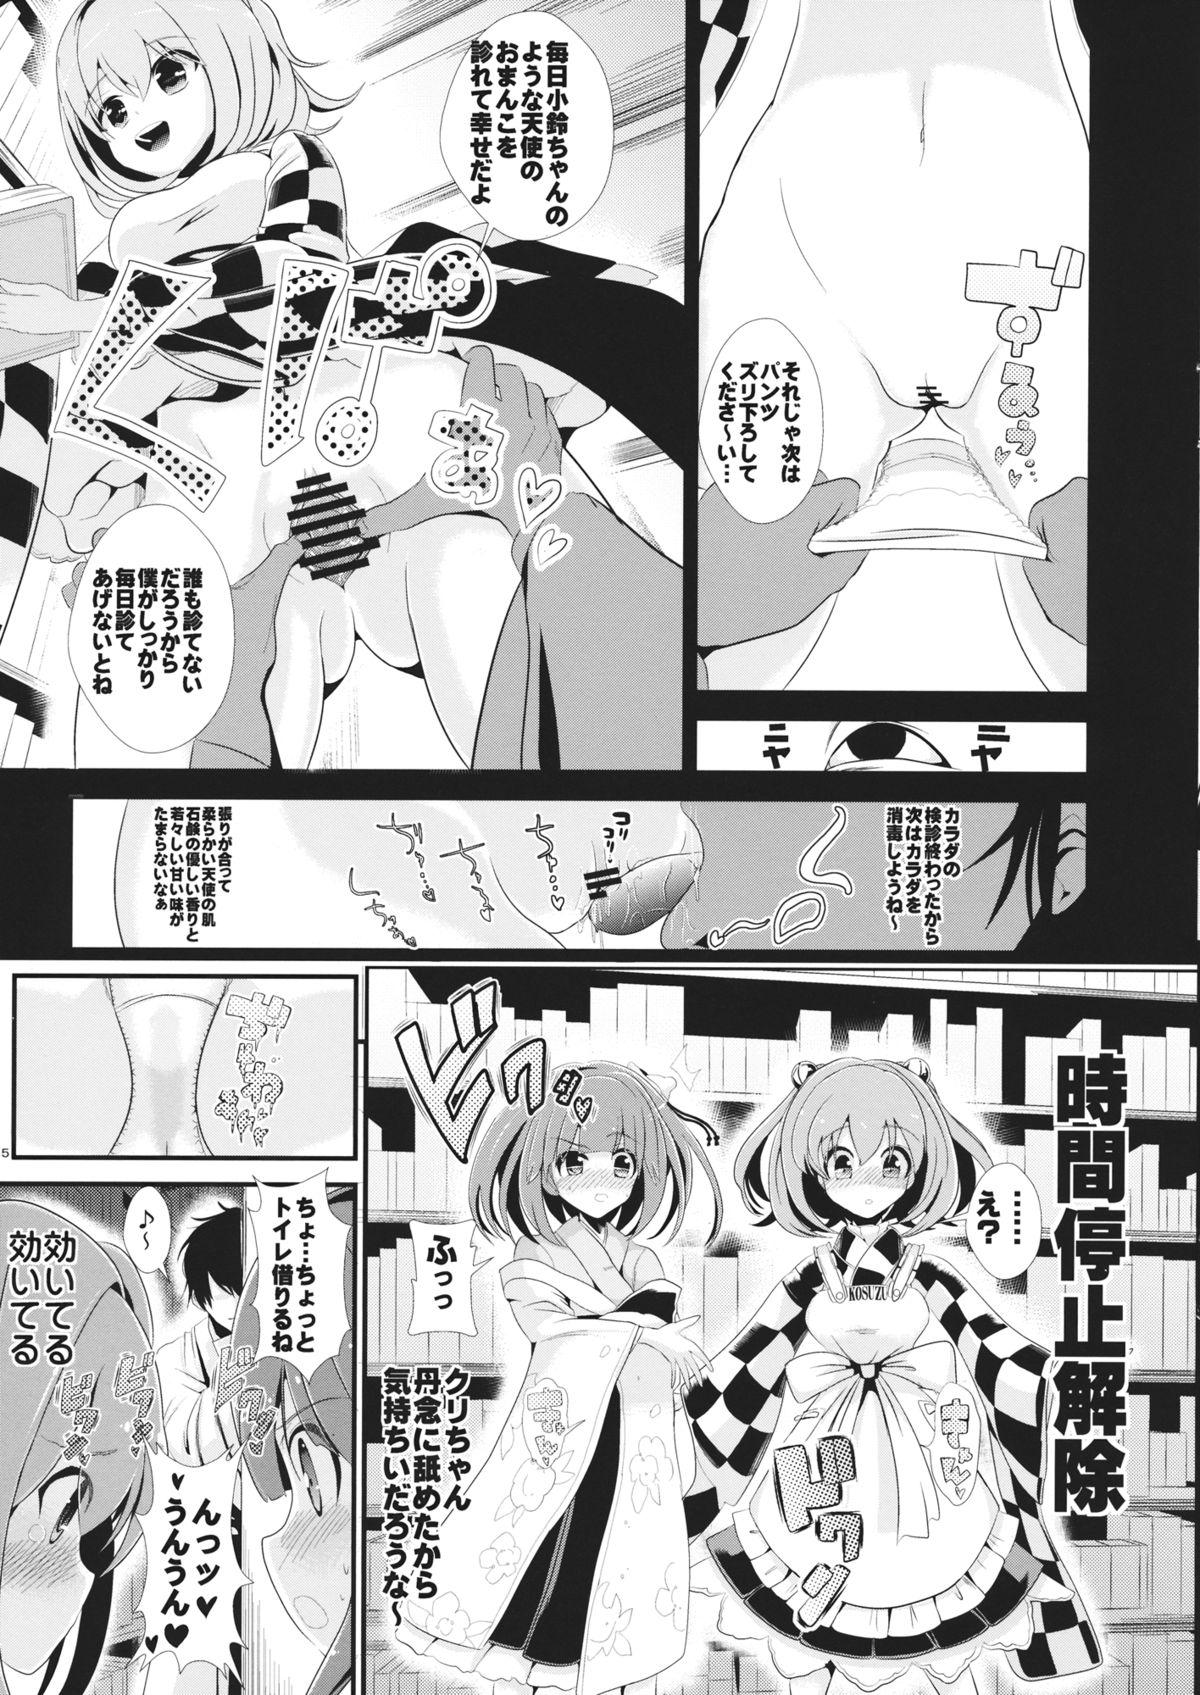 Mmd Touhou Jikan 7 Motoori Kosuzu & Hieda no Akyuu - Touhou project Hard Porn - Page 6